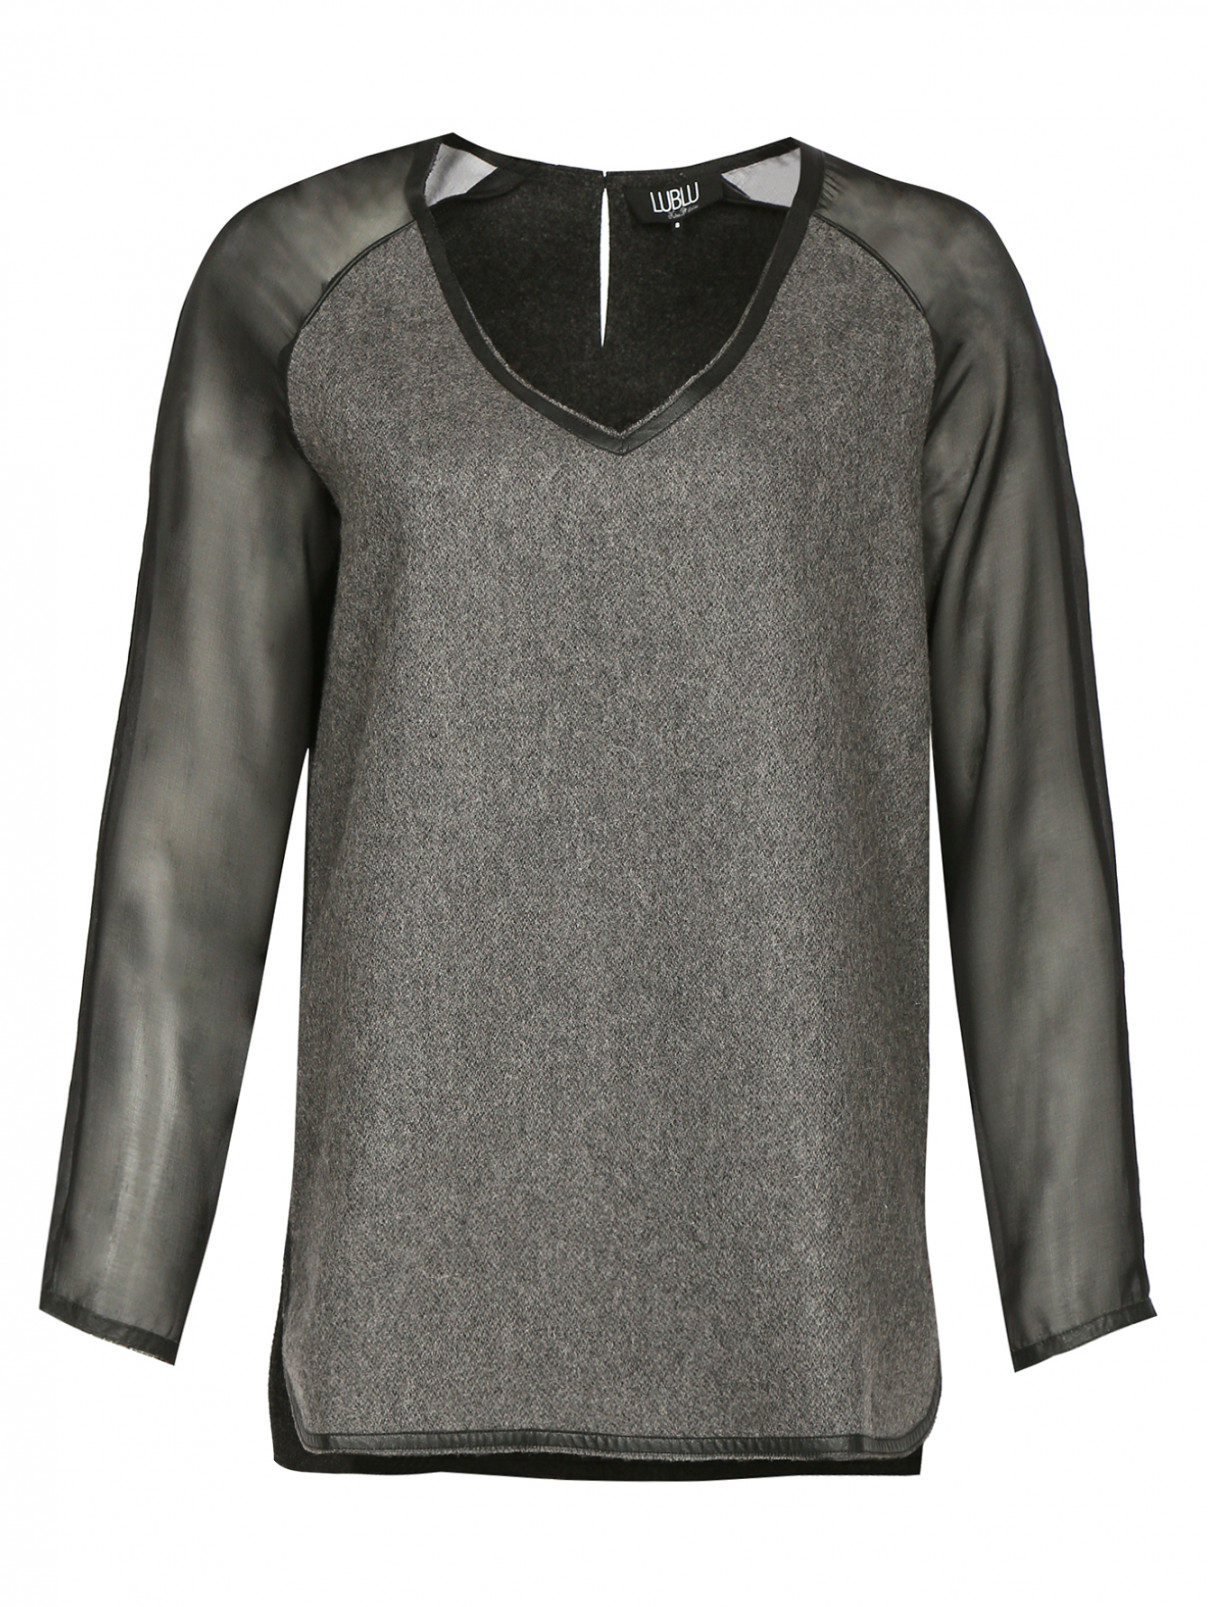 Джемпер из шерсти с шелковыми рукавами Kira Plastinina  –  Общий вид  – Цвет:  Серый